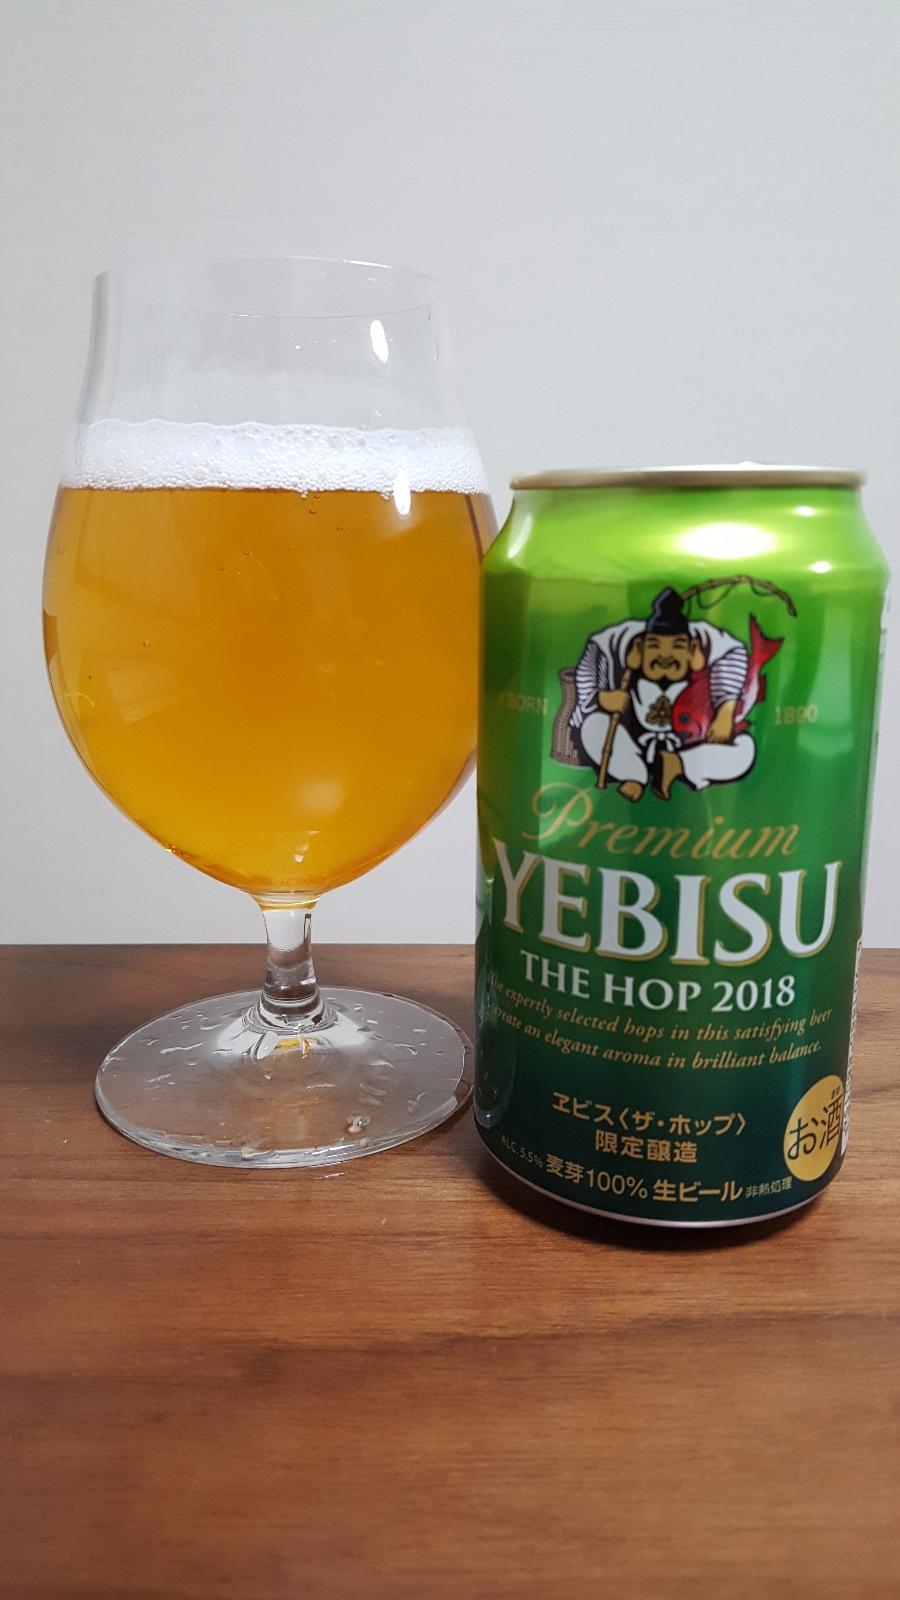 Yebisu The Hop 2018